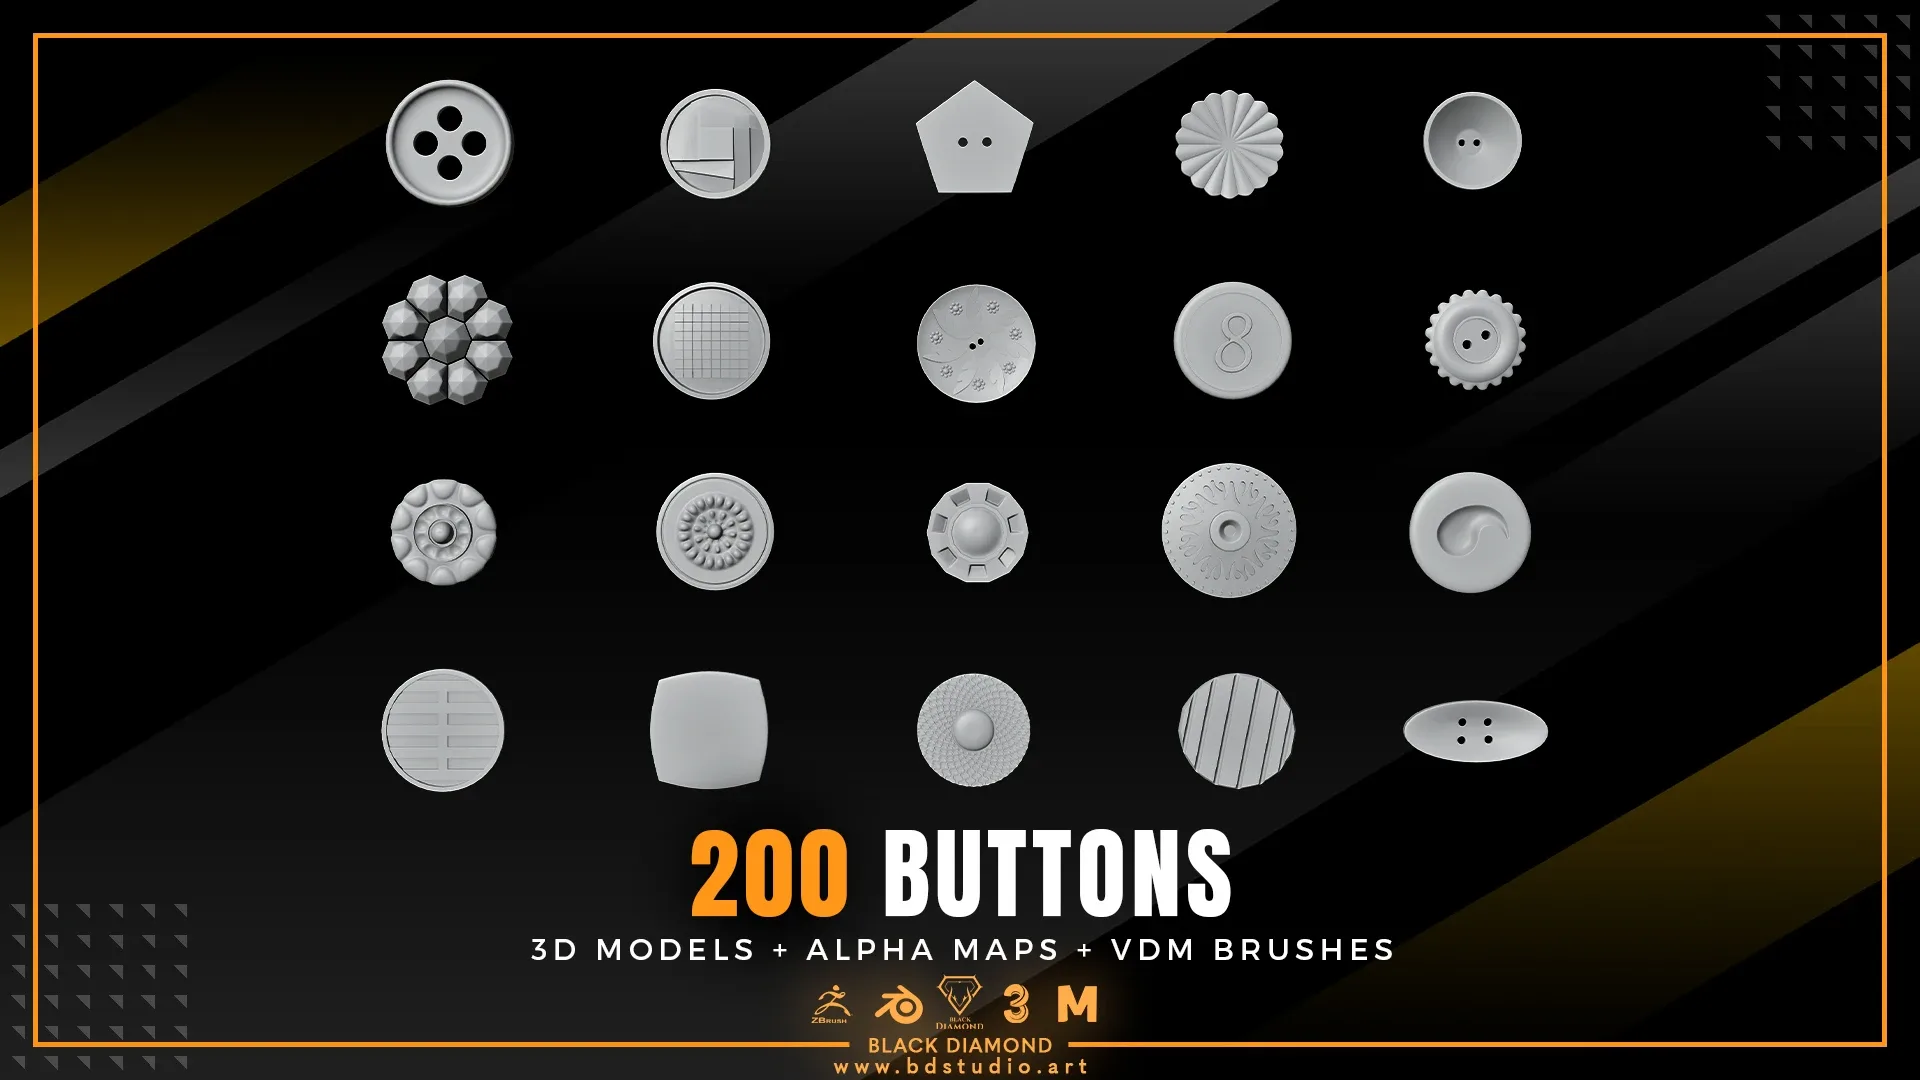 200 BUTTONS ( 3D MODELS + ALPHA MAPS + VDM BRUSHES )